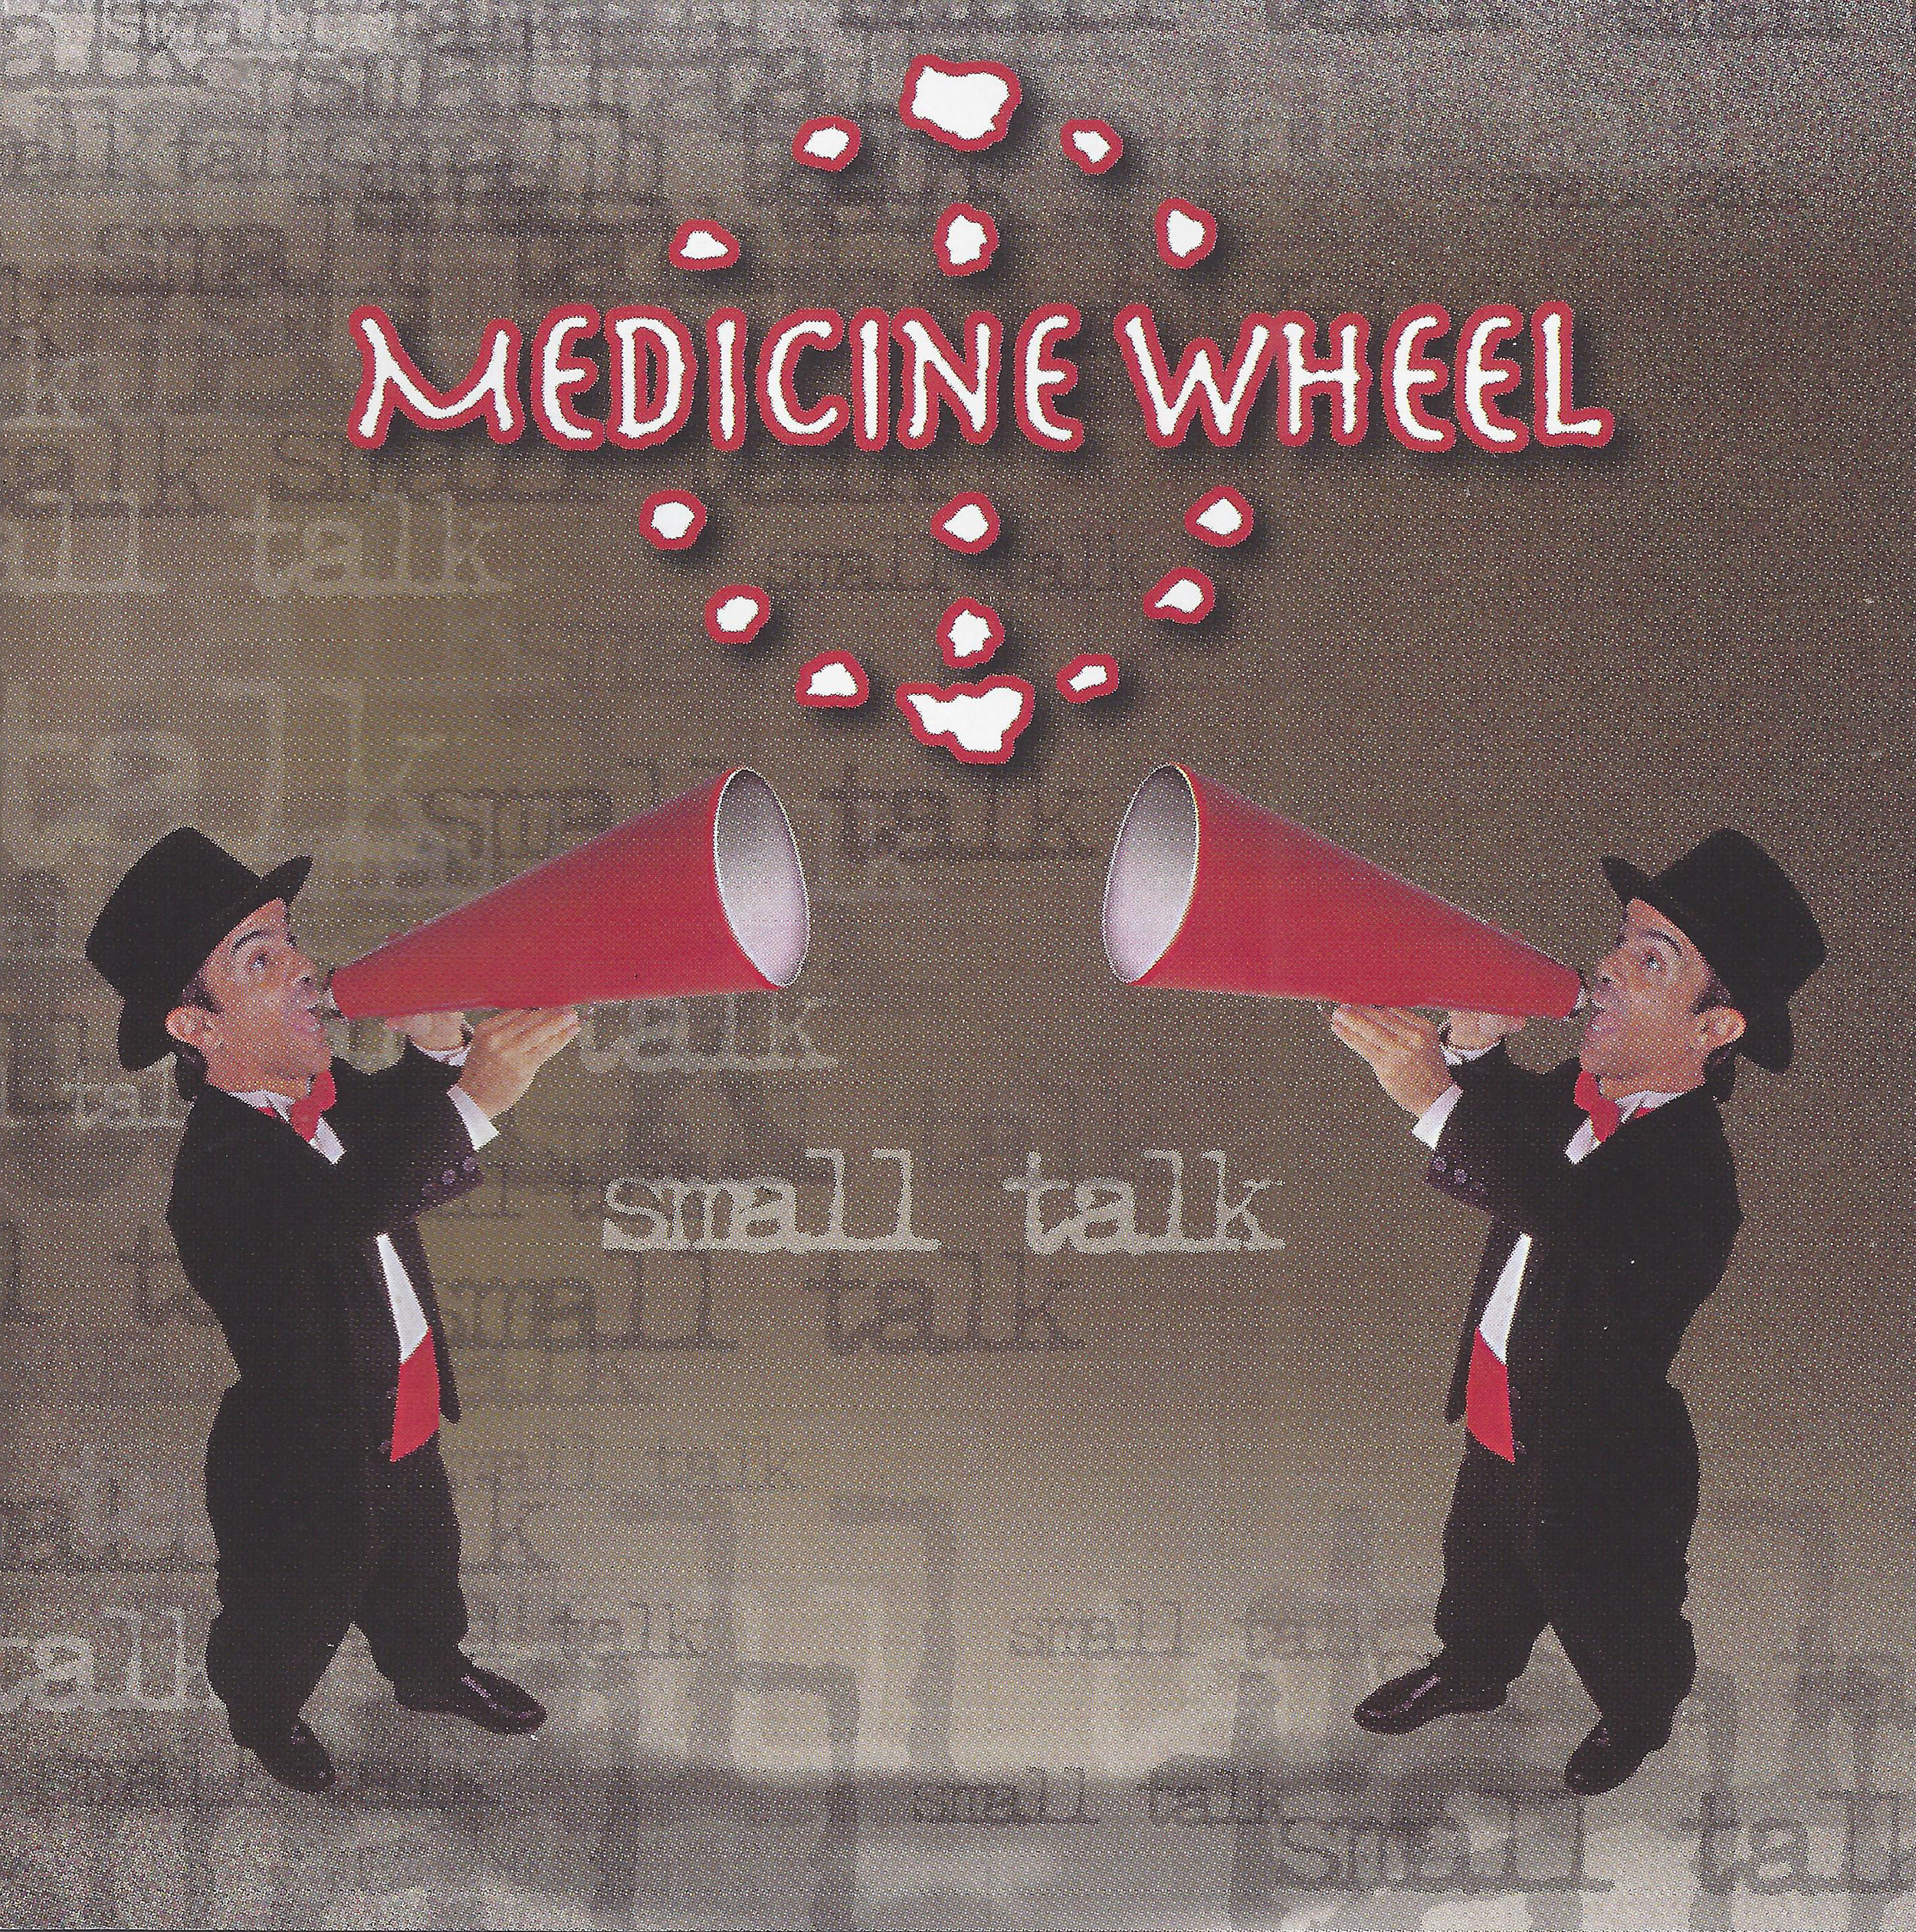 Medicine Wheel_Small Talk.jpg